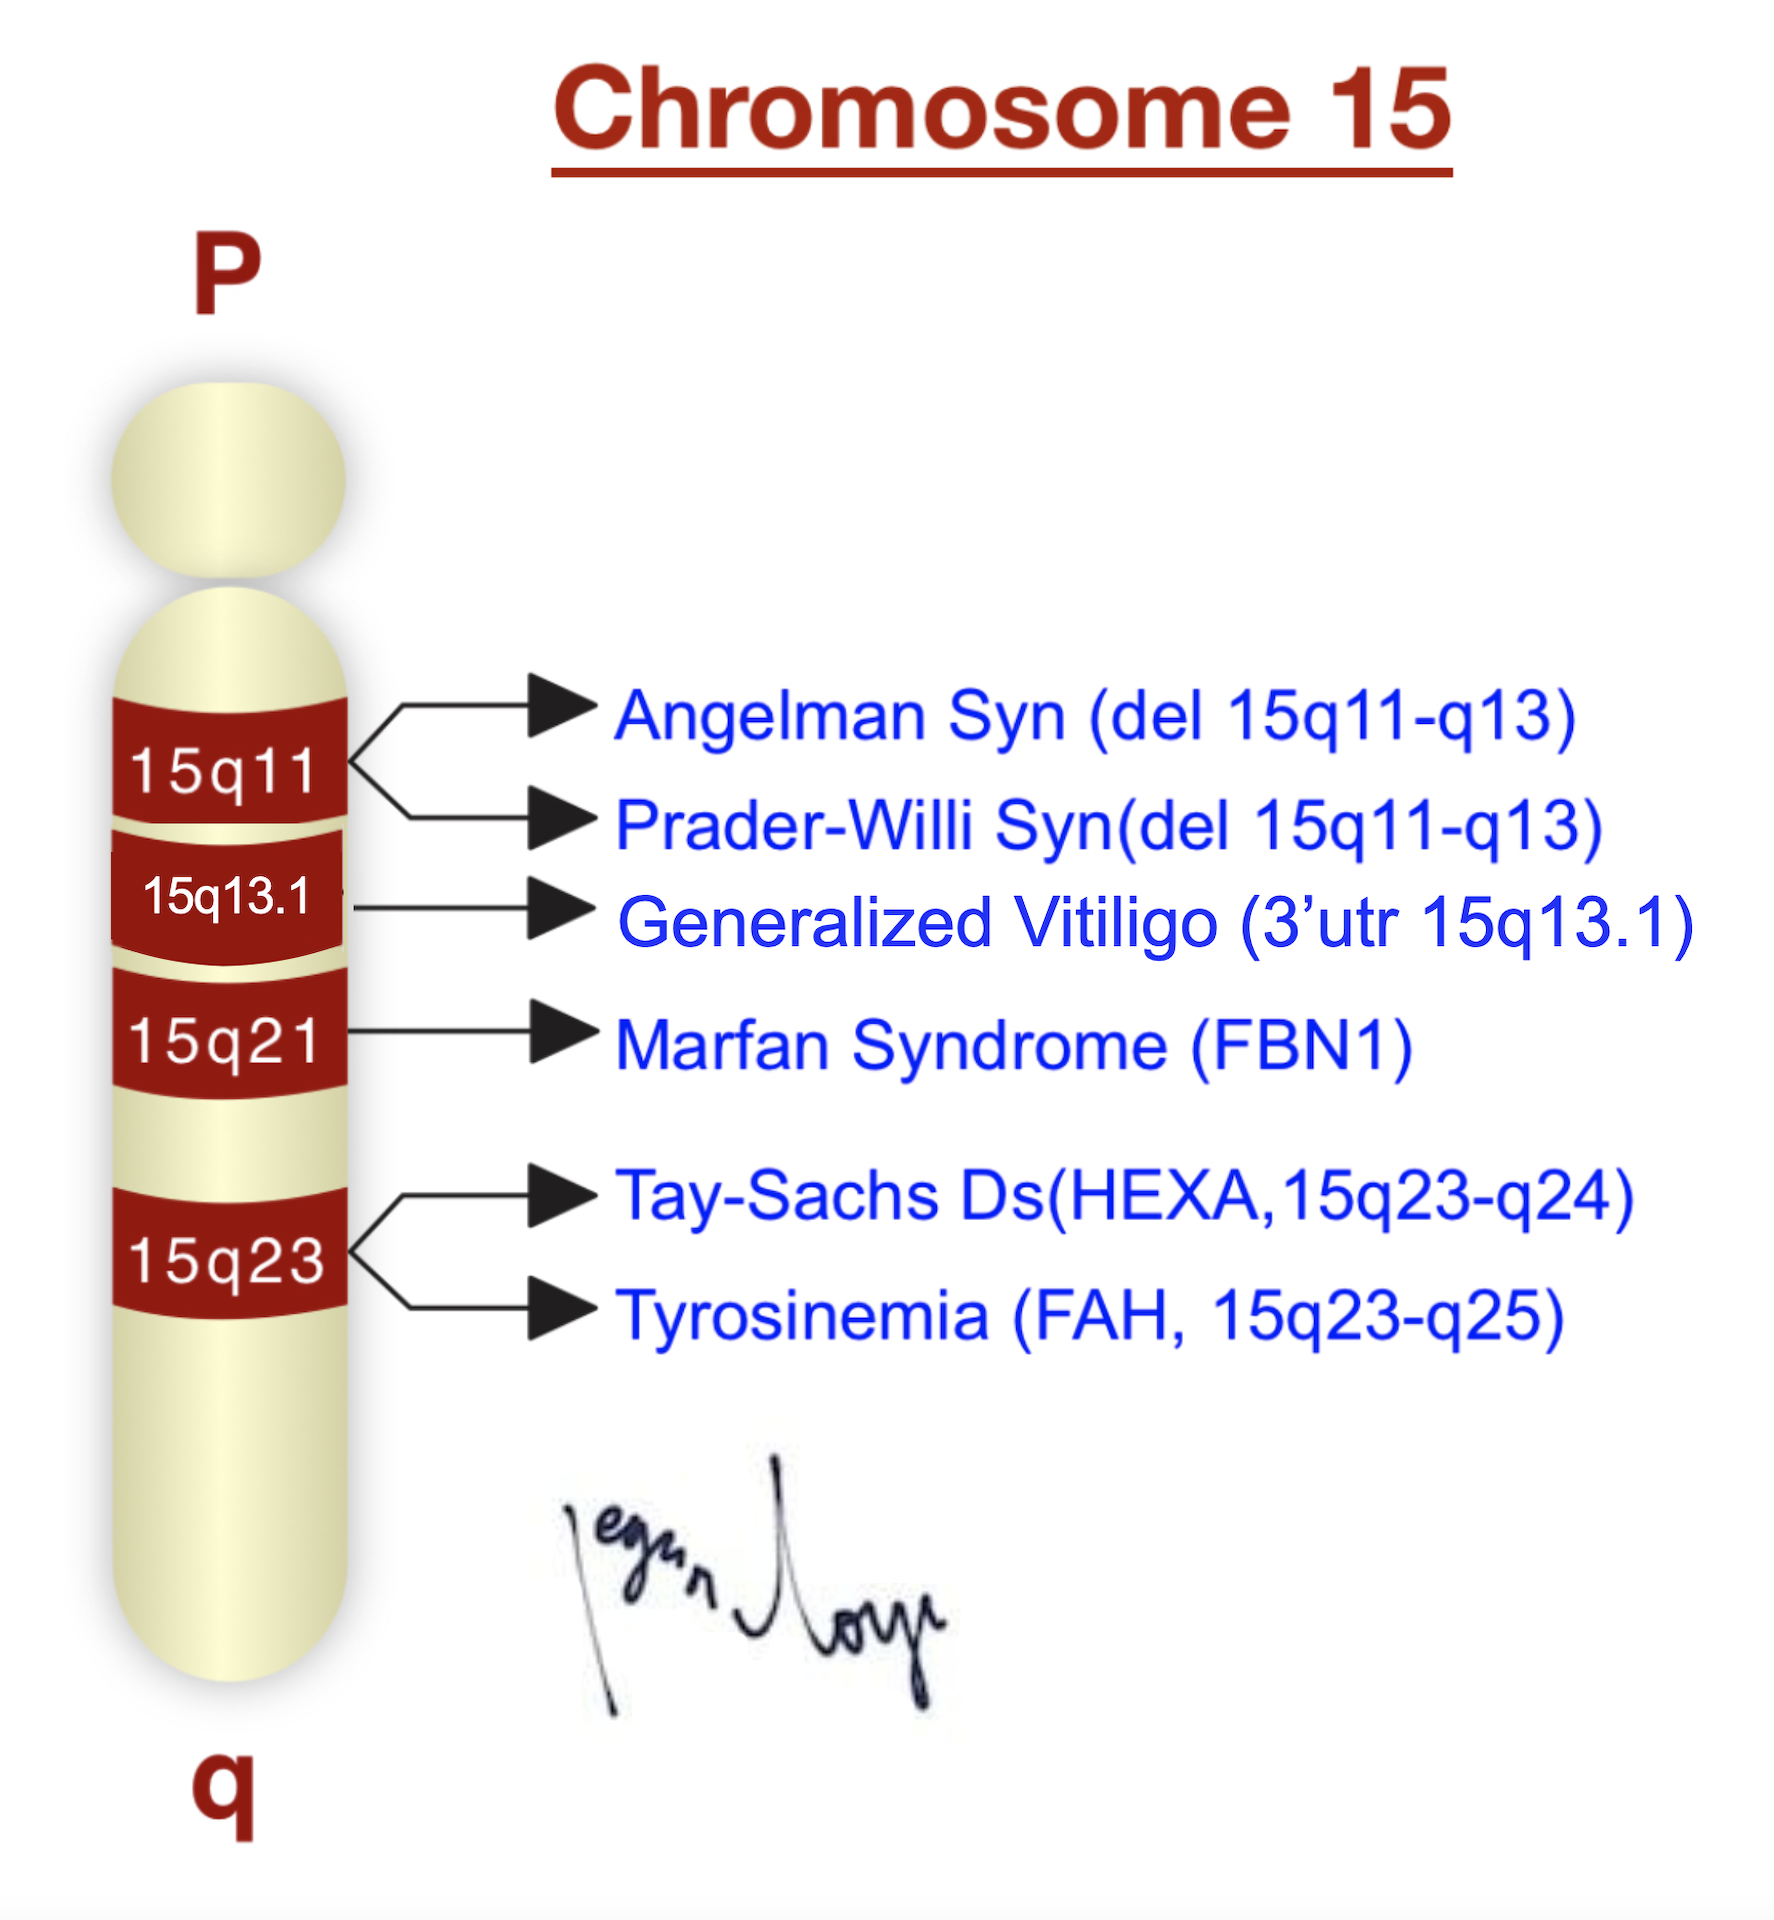 cromosoma_15q13.1_vitiligo_generalizado_herc2_rs1129038_C.png